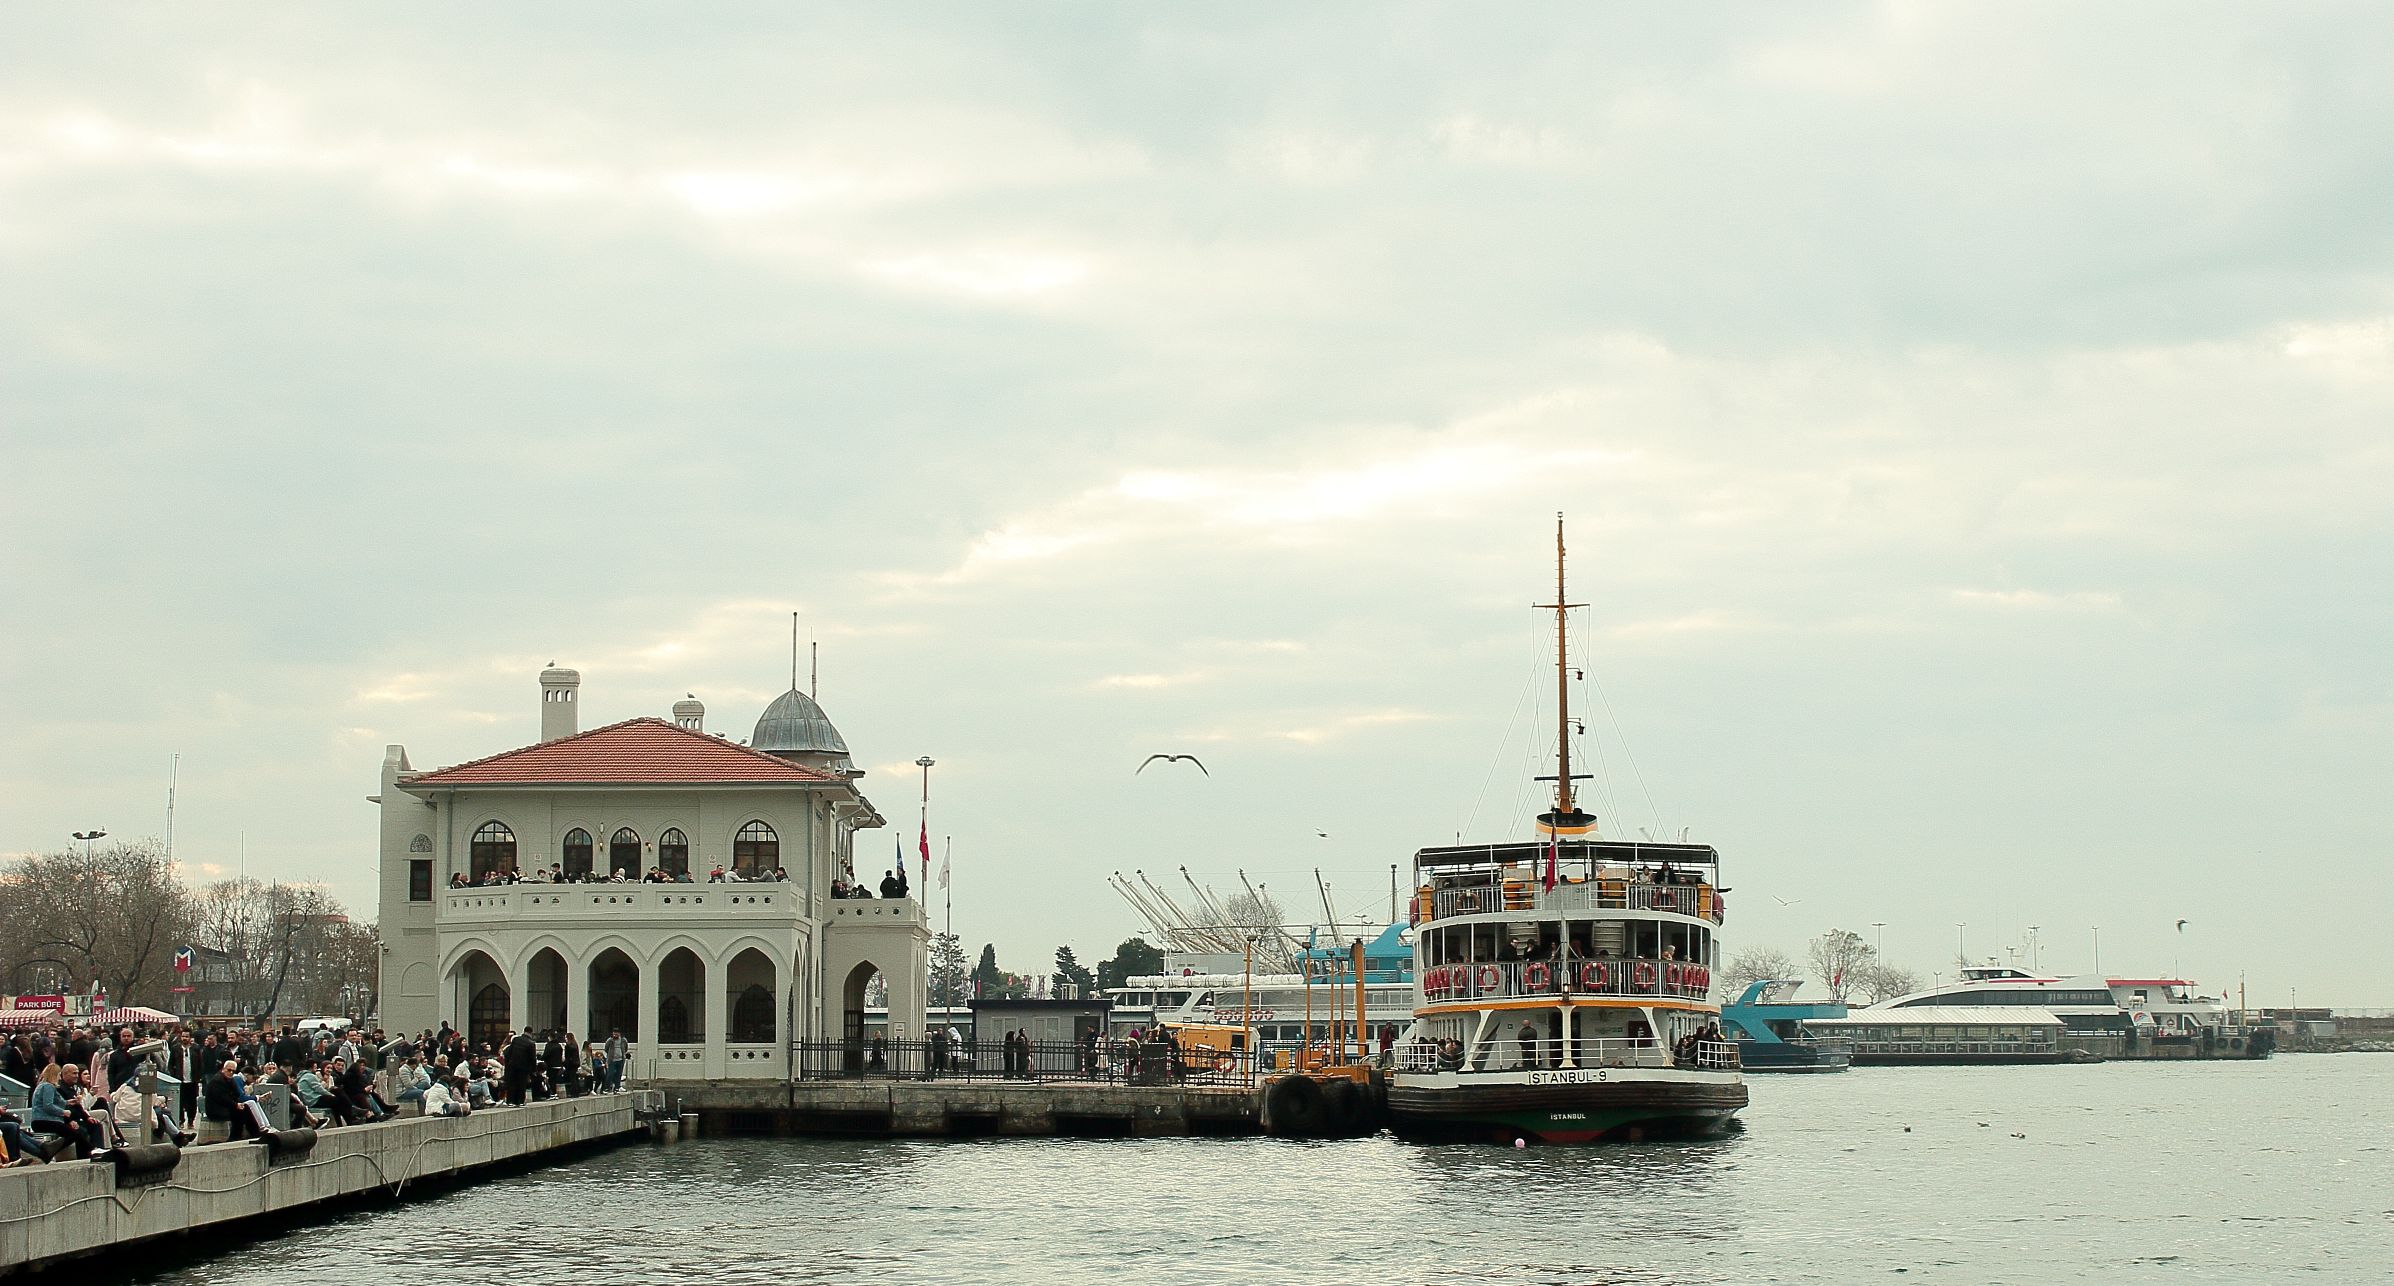 Kadıköy Ferry Terminal - daylight